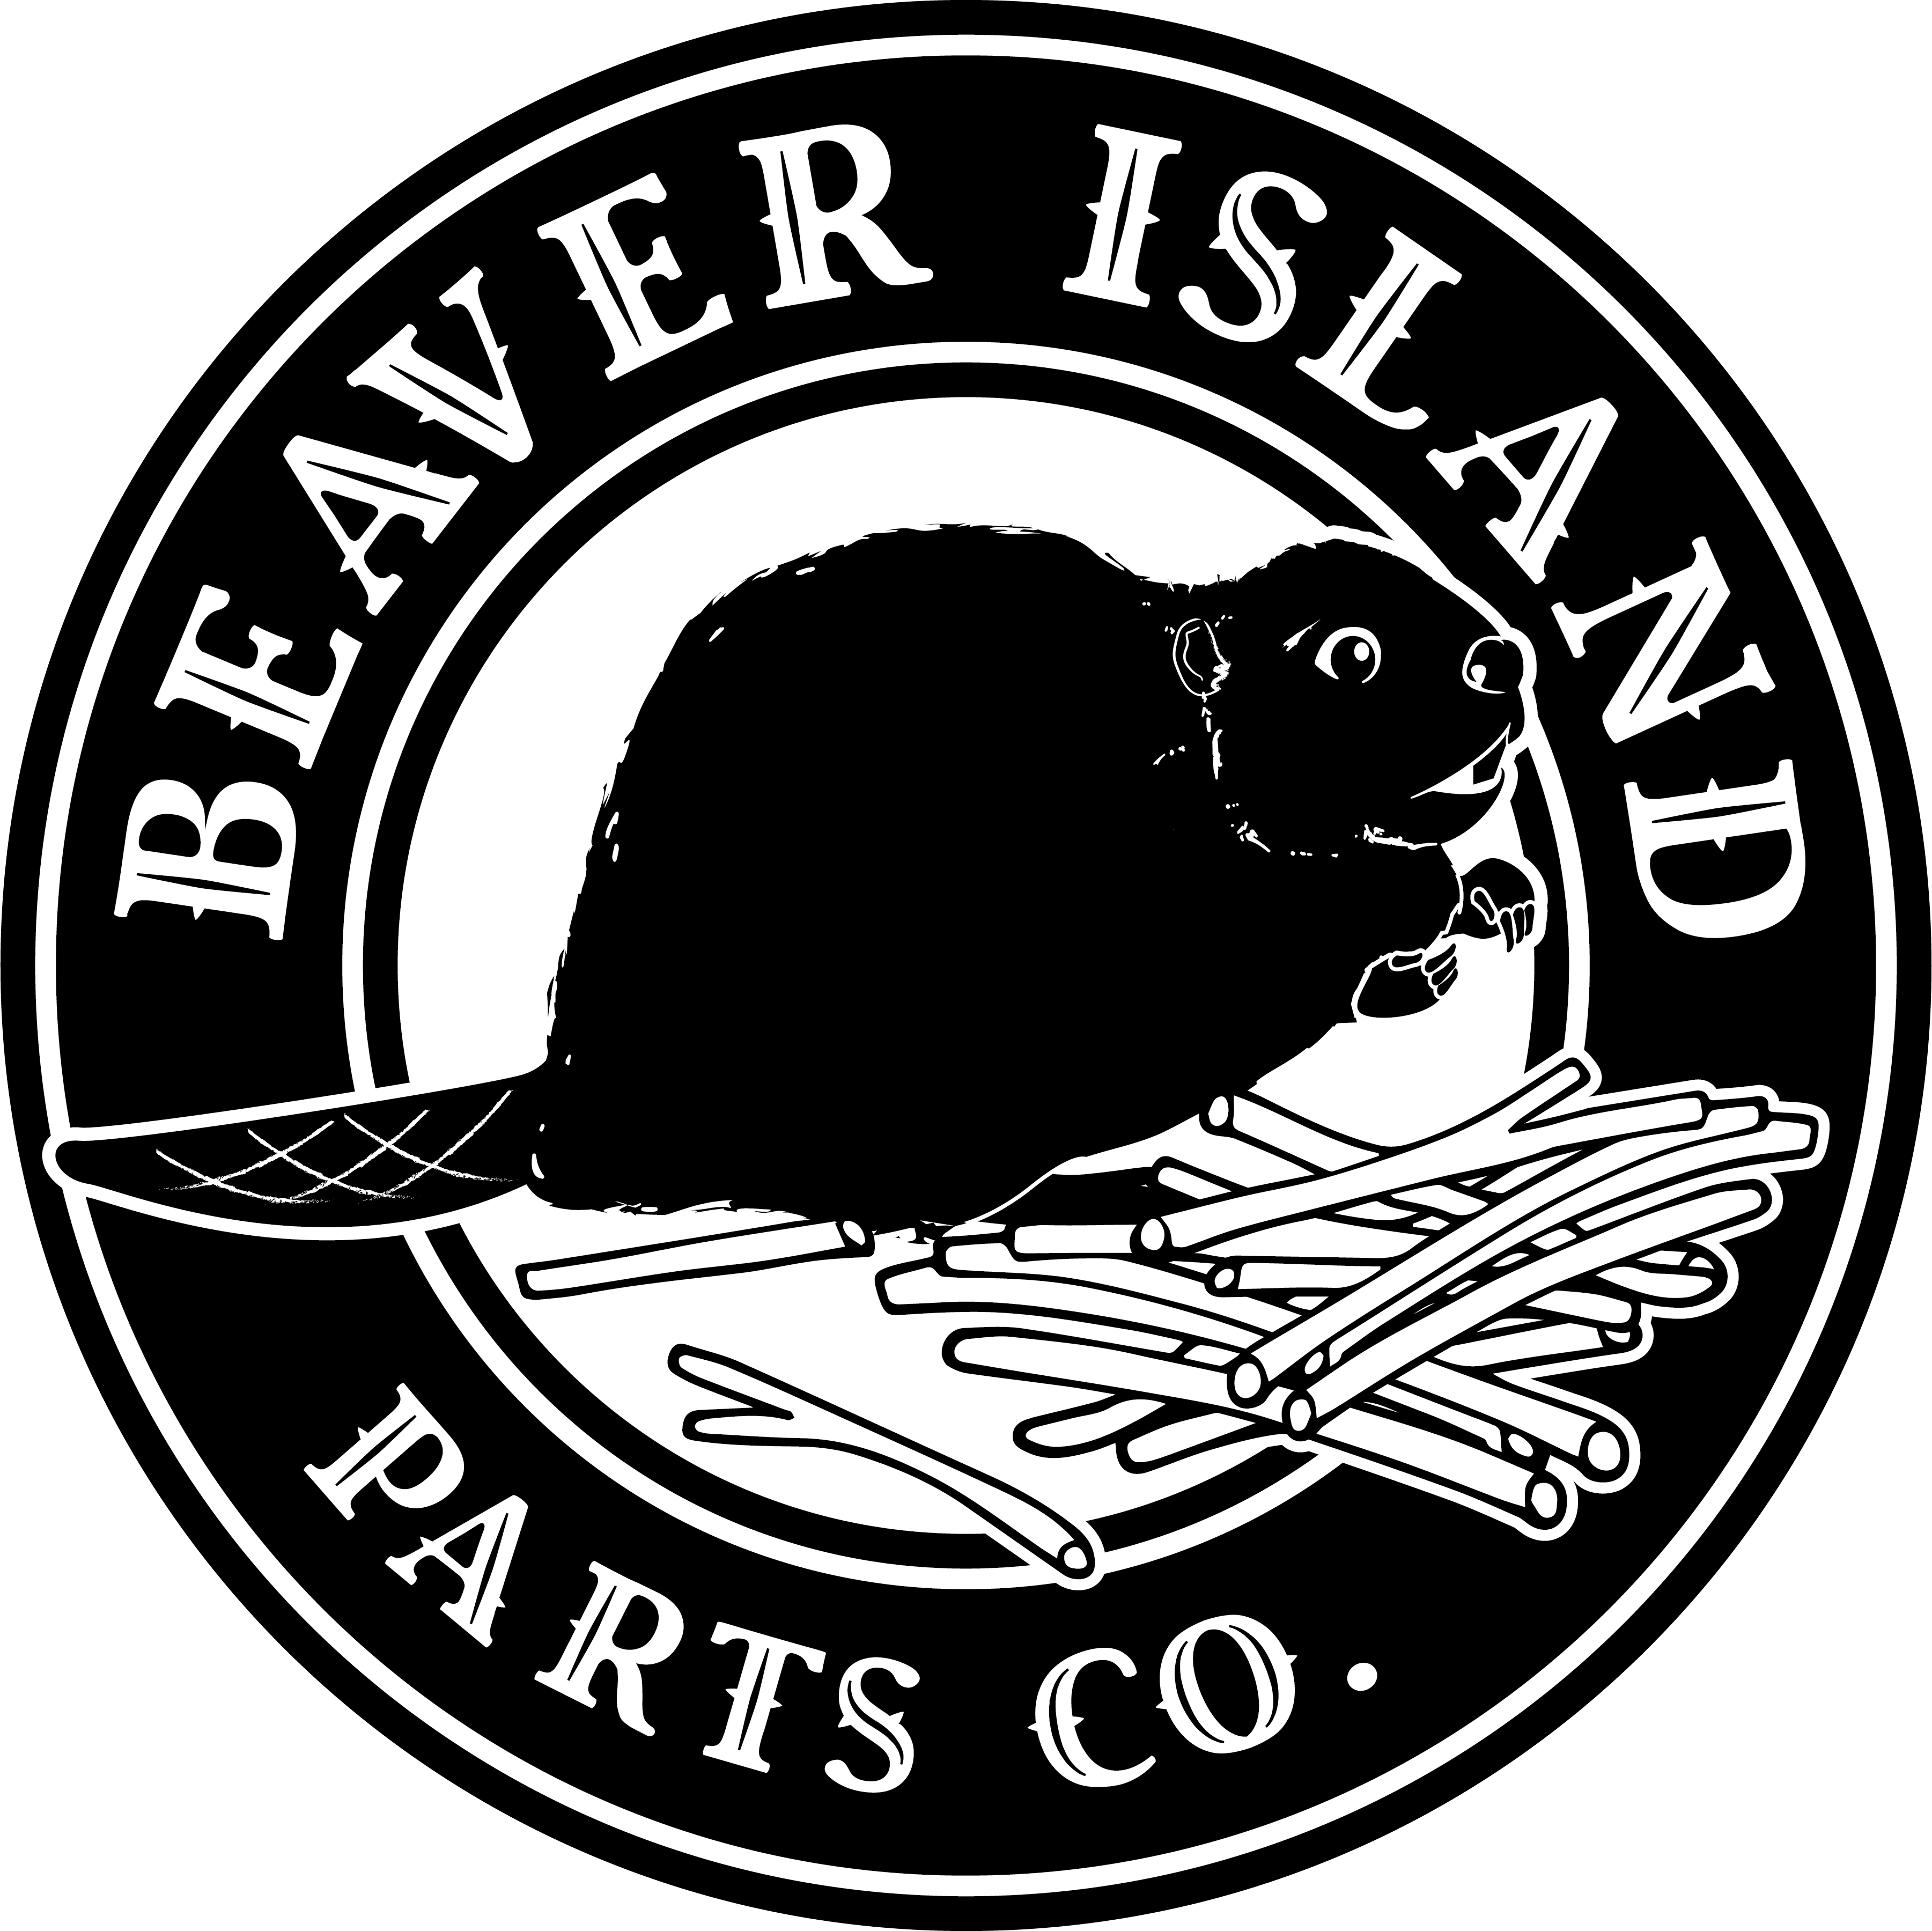 Beaver Island Parts Company